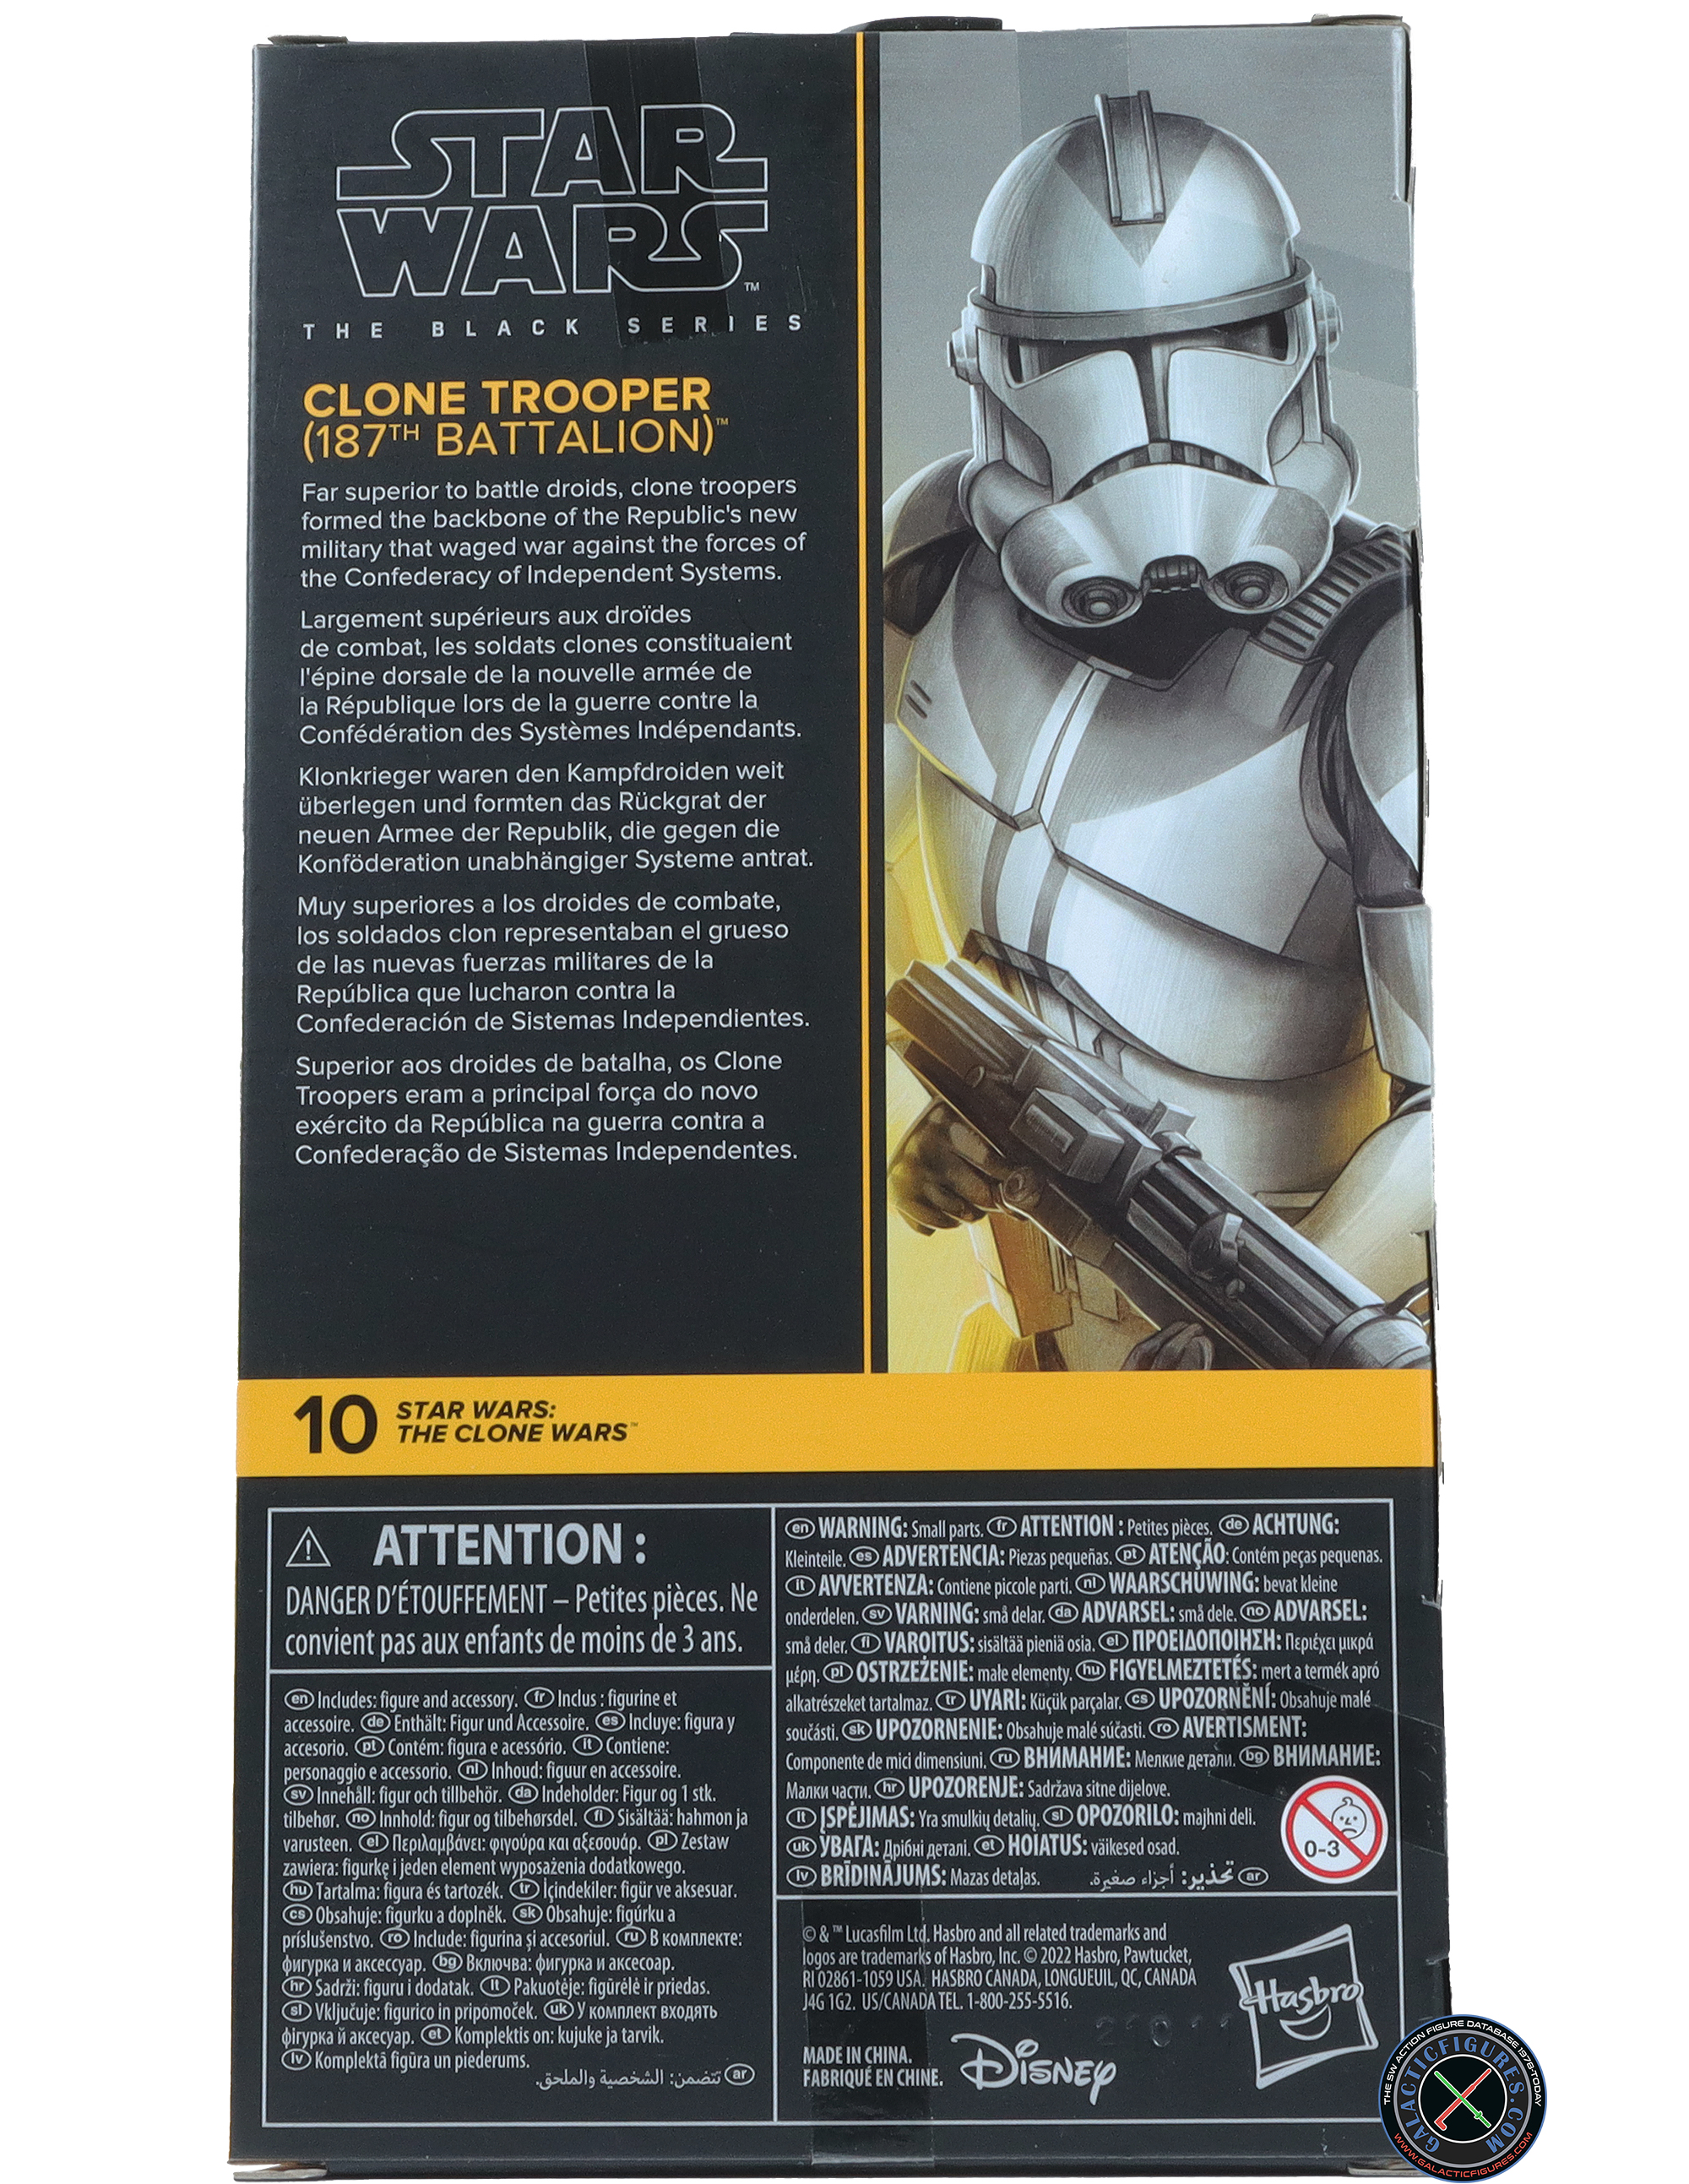 Clone Trooper 187th Battalion